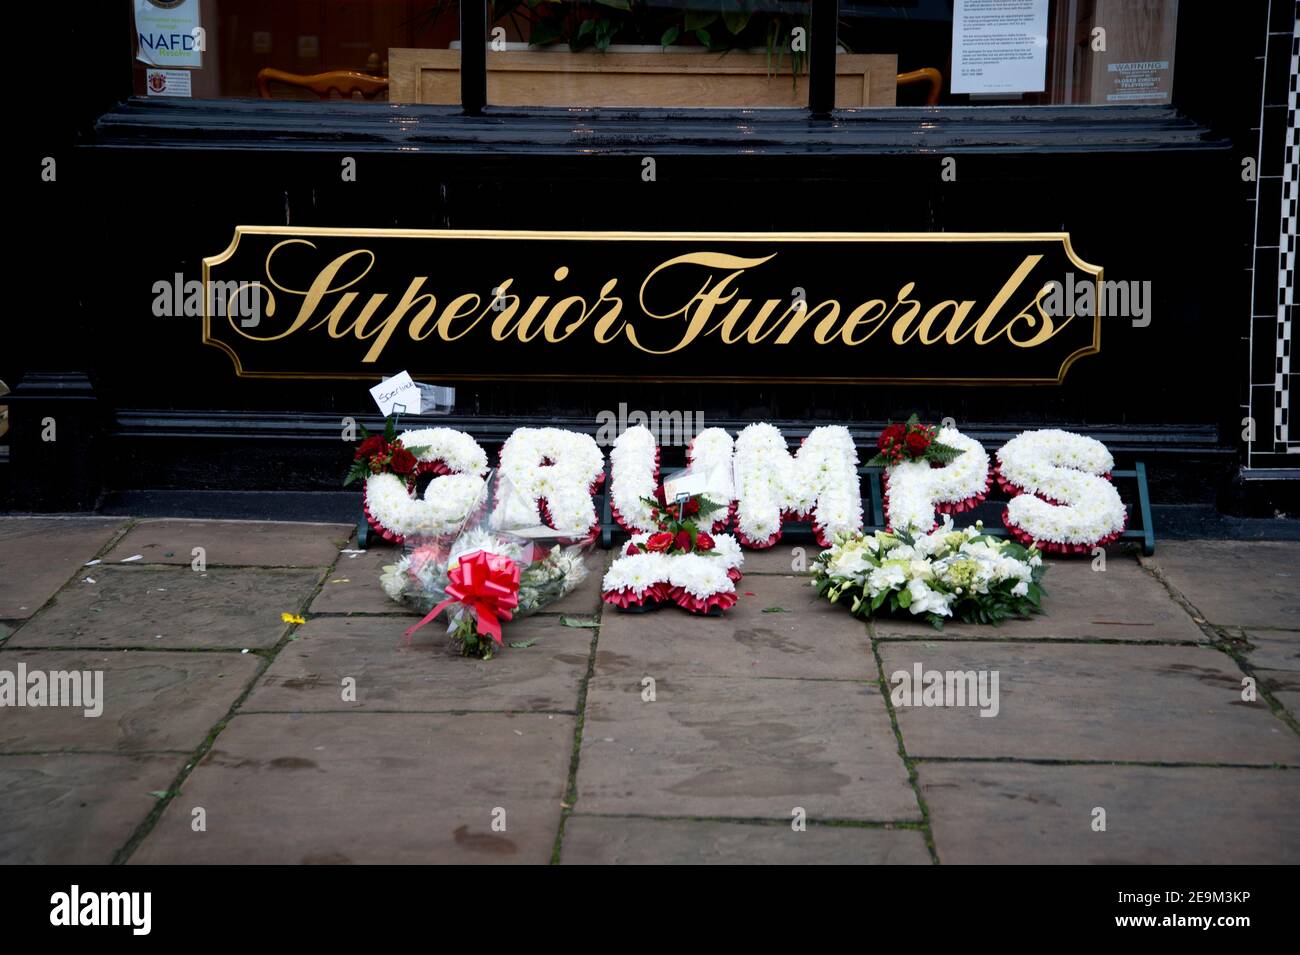 Londra, Islington. Salone funebre. Fiori sul marciapiede con corona che dice 'Grumps'. Foto Stock